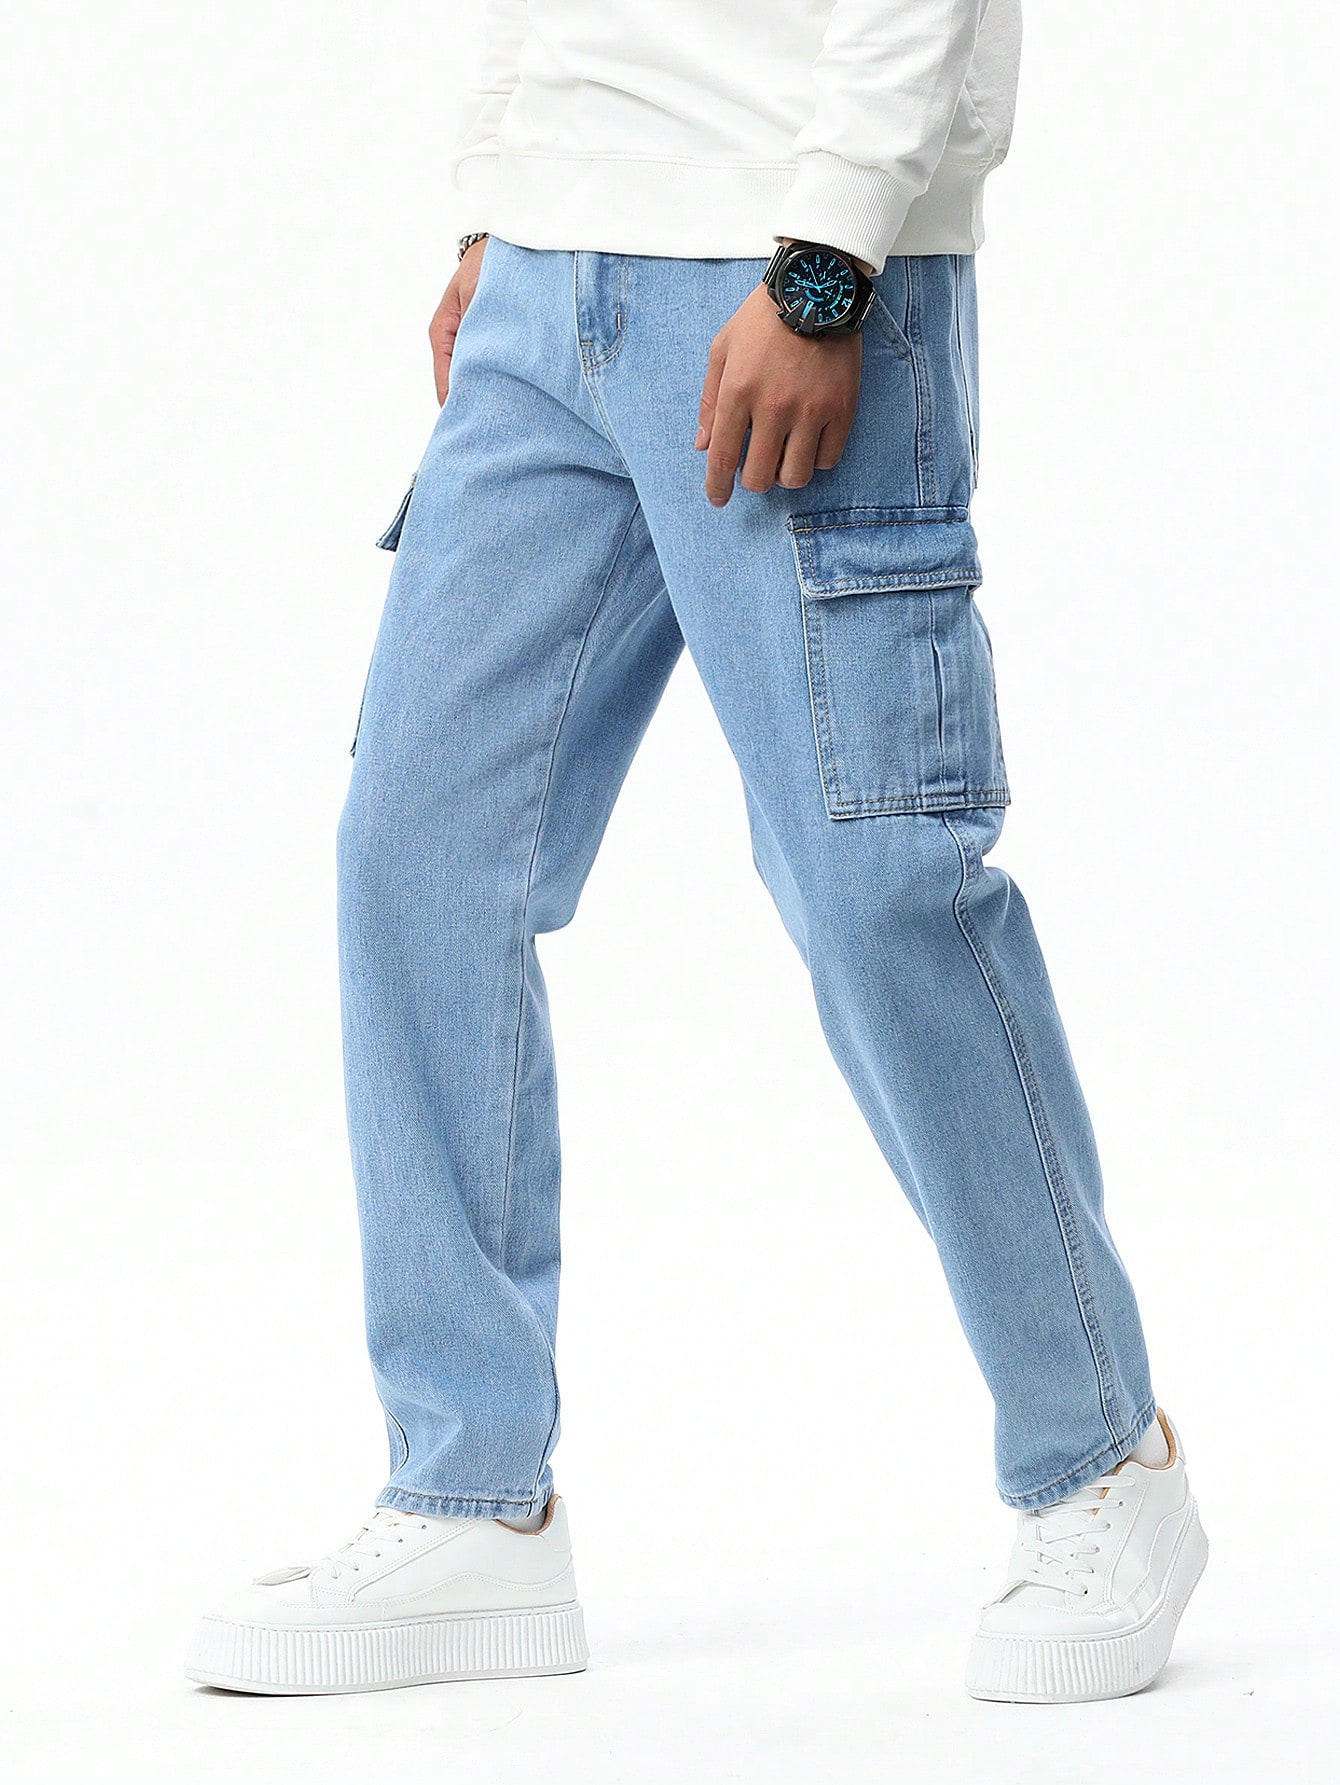 Мужские синие джинсы свободного кроя Manfinity Hypemode, легкая стирка